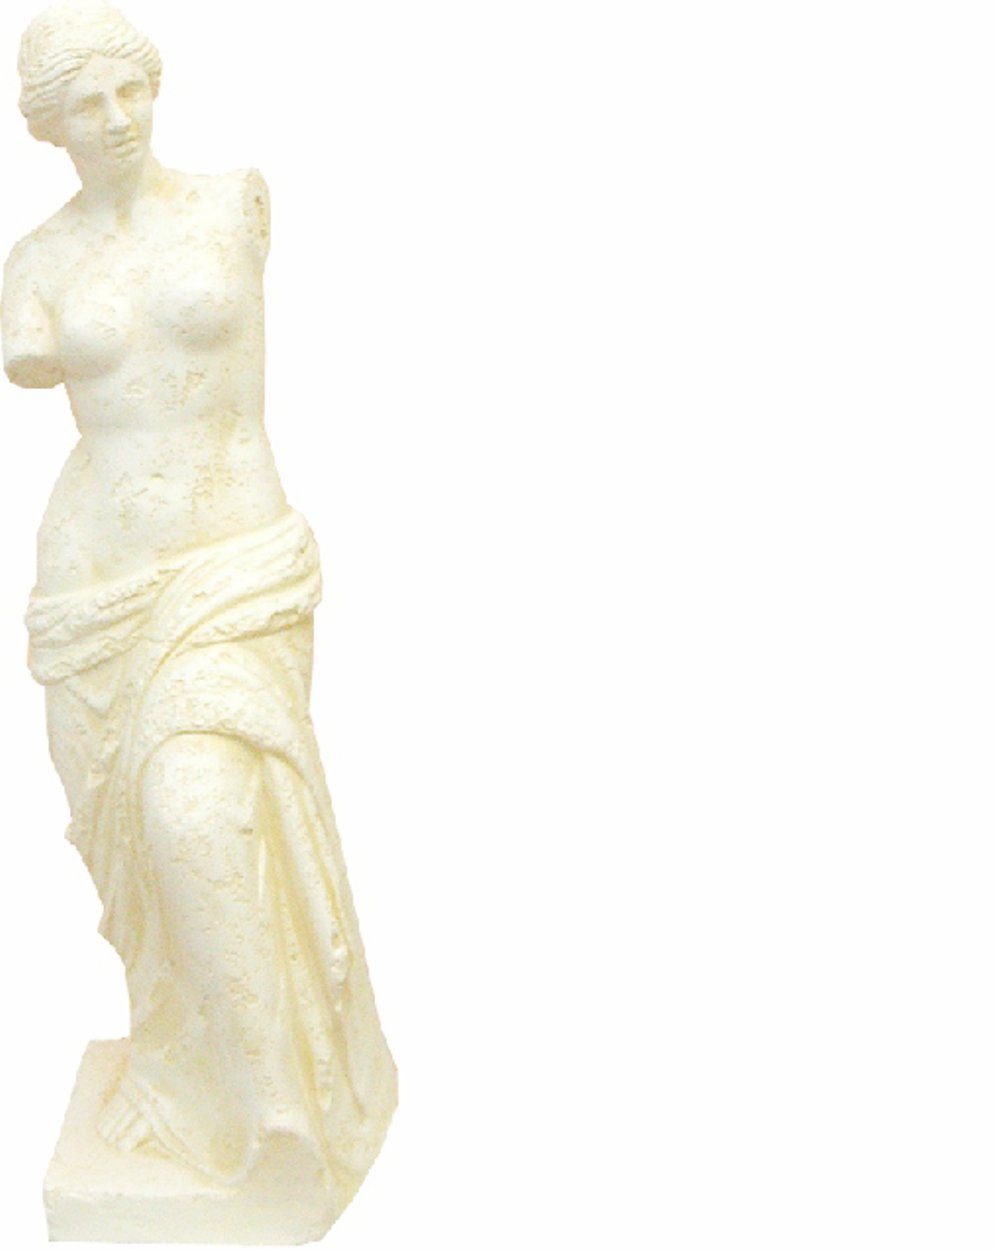 JVmoebel Skulptur Design Figur Antik Stil Skulptur Griechische Figuren Dekoration 0330 | Skulpturen